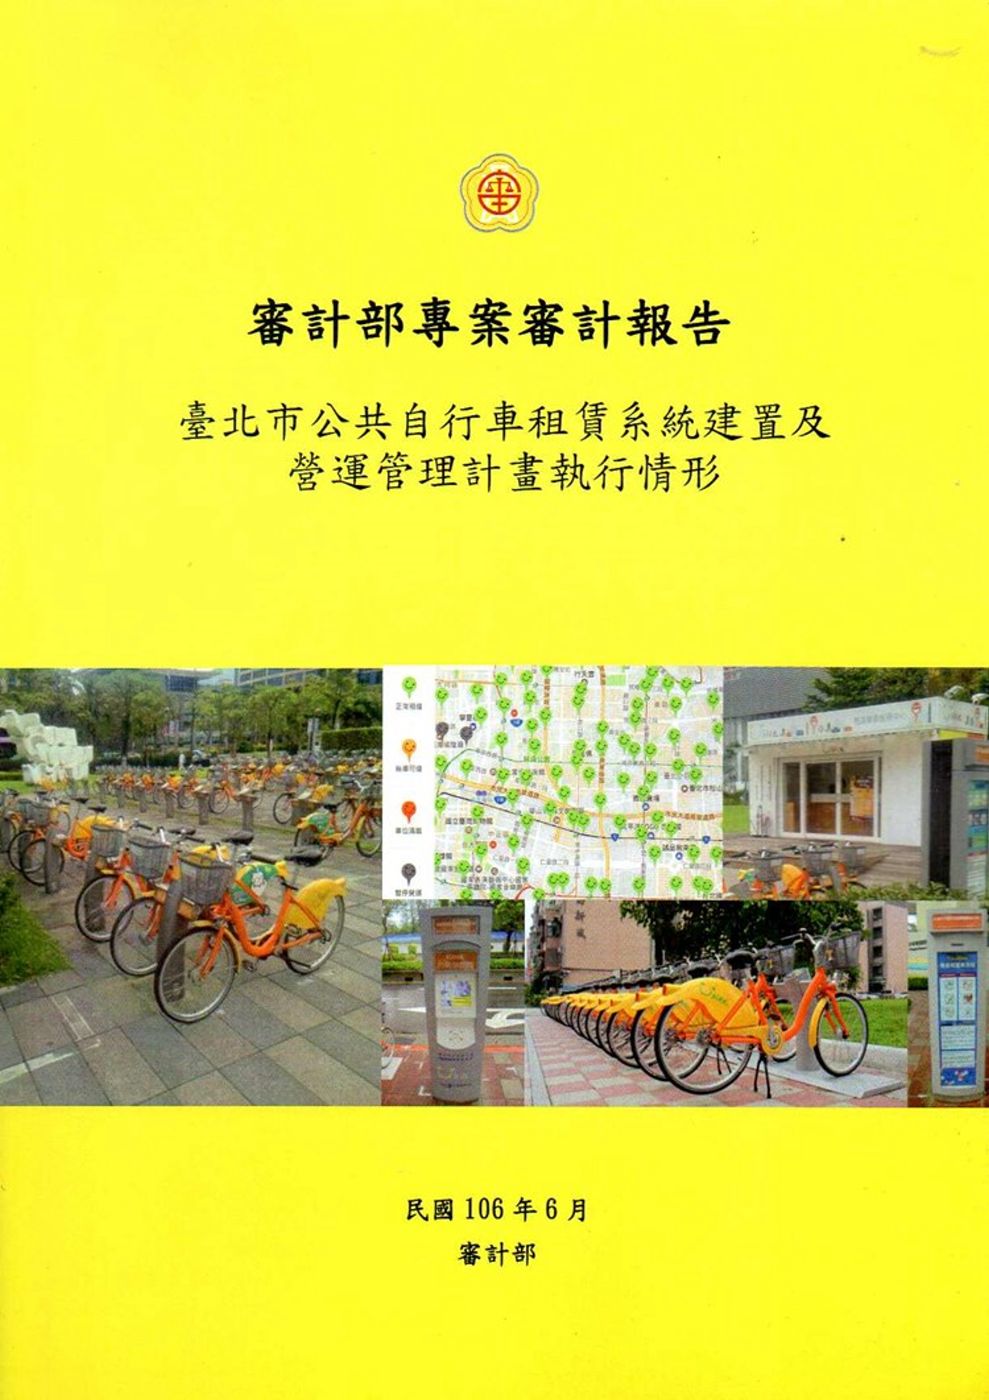 臺北市公共自行車租賃系統建置及營運管理計畫執行情形